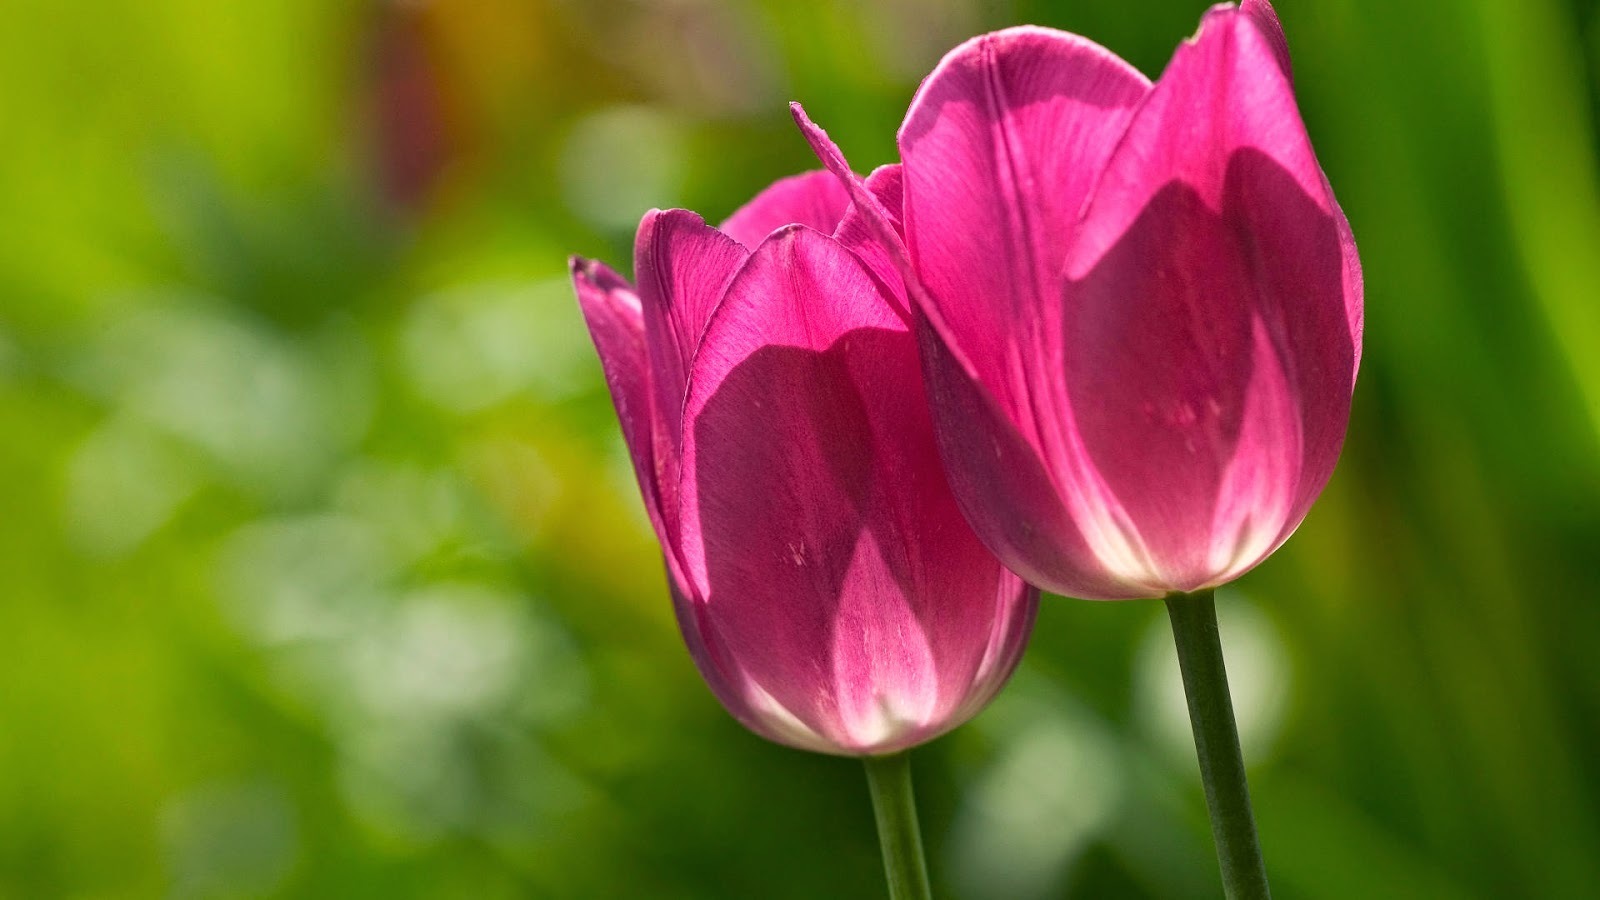 hinh nen hoa tulip 046